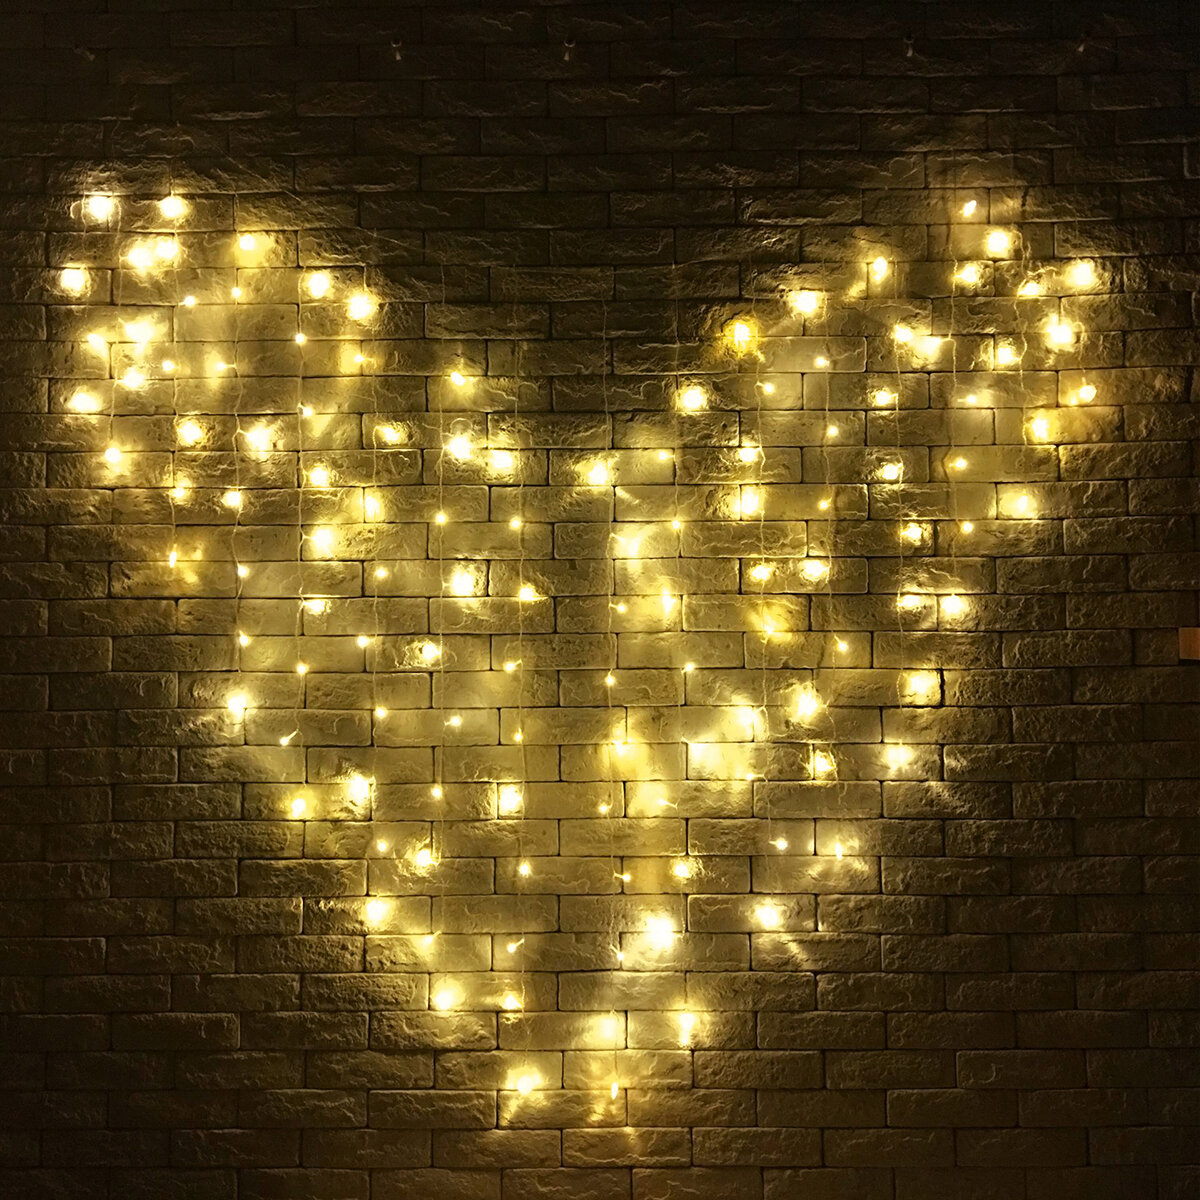 128 LED-Herz-Form-Fee-Schnur-Vorhang-Licht Valentinstag-Hochzeits-Weihnachtsdekor